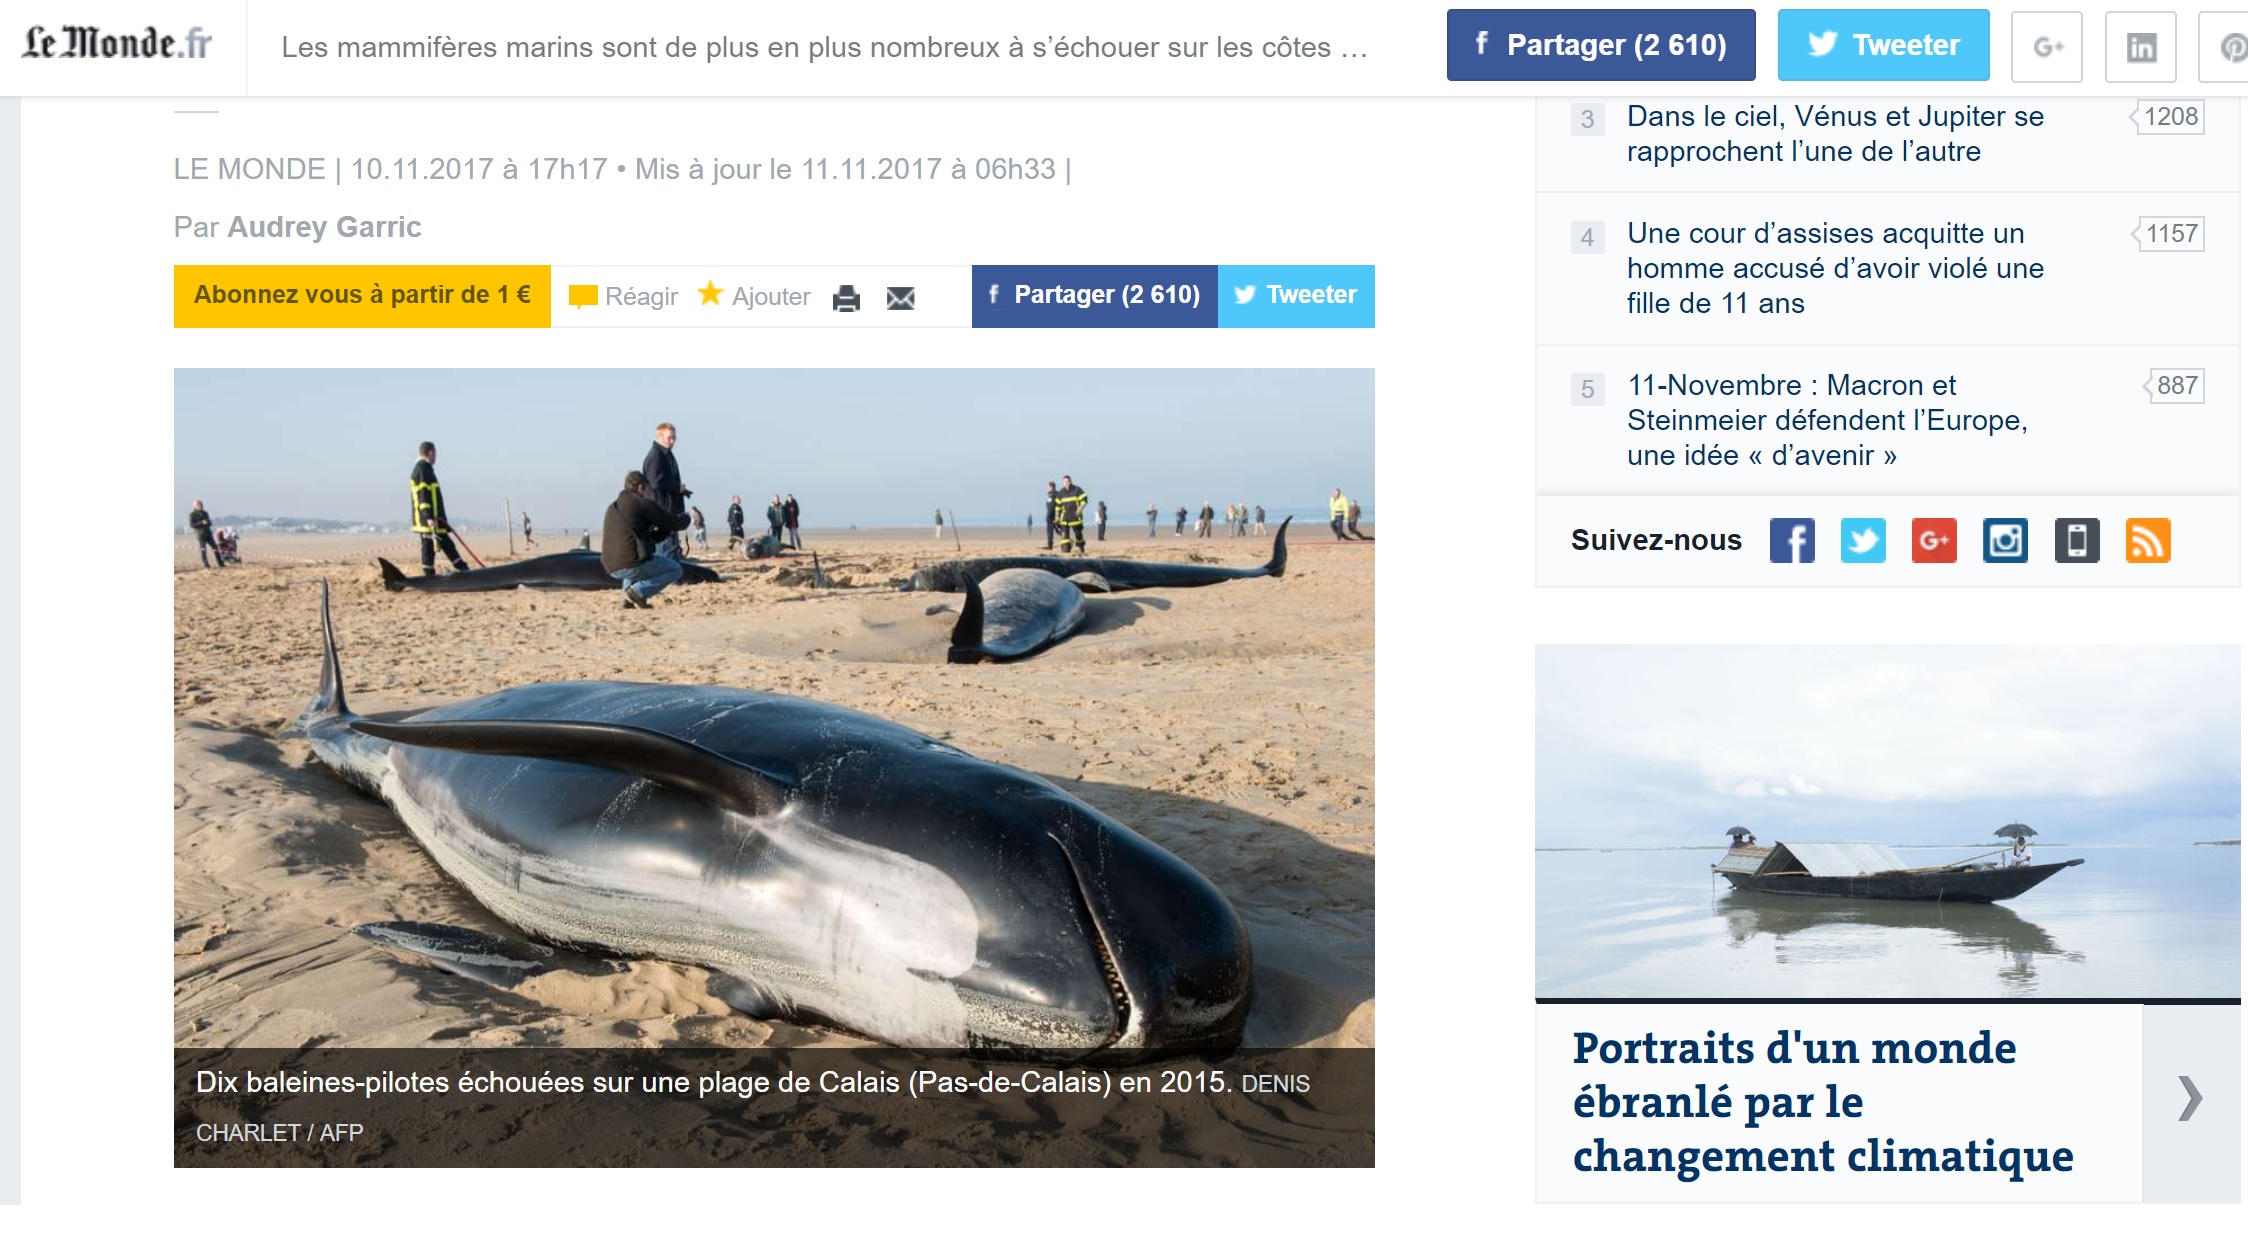 Les mammifères marins sont de plus en plus nombreux à s’échouer sur les côtes françaises